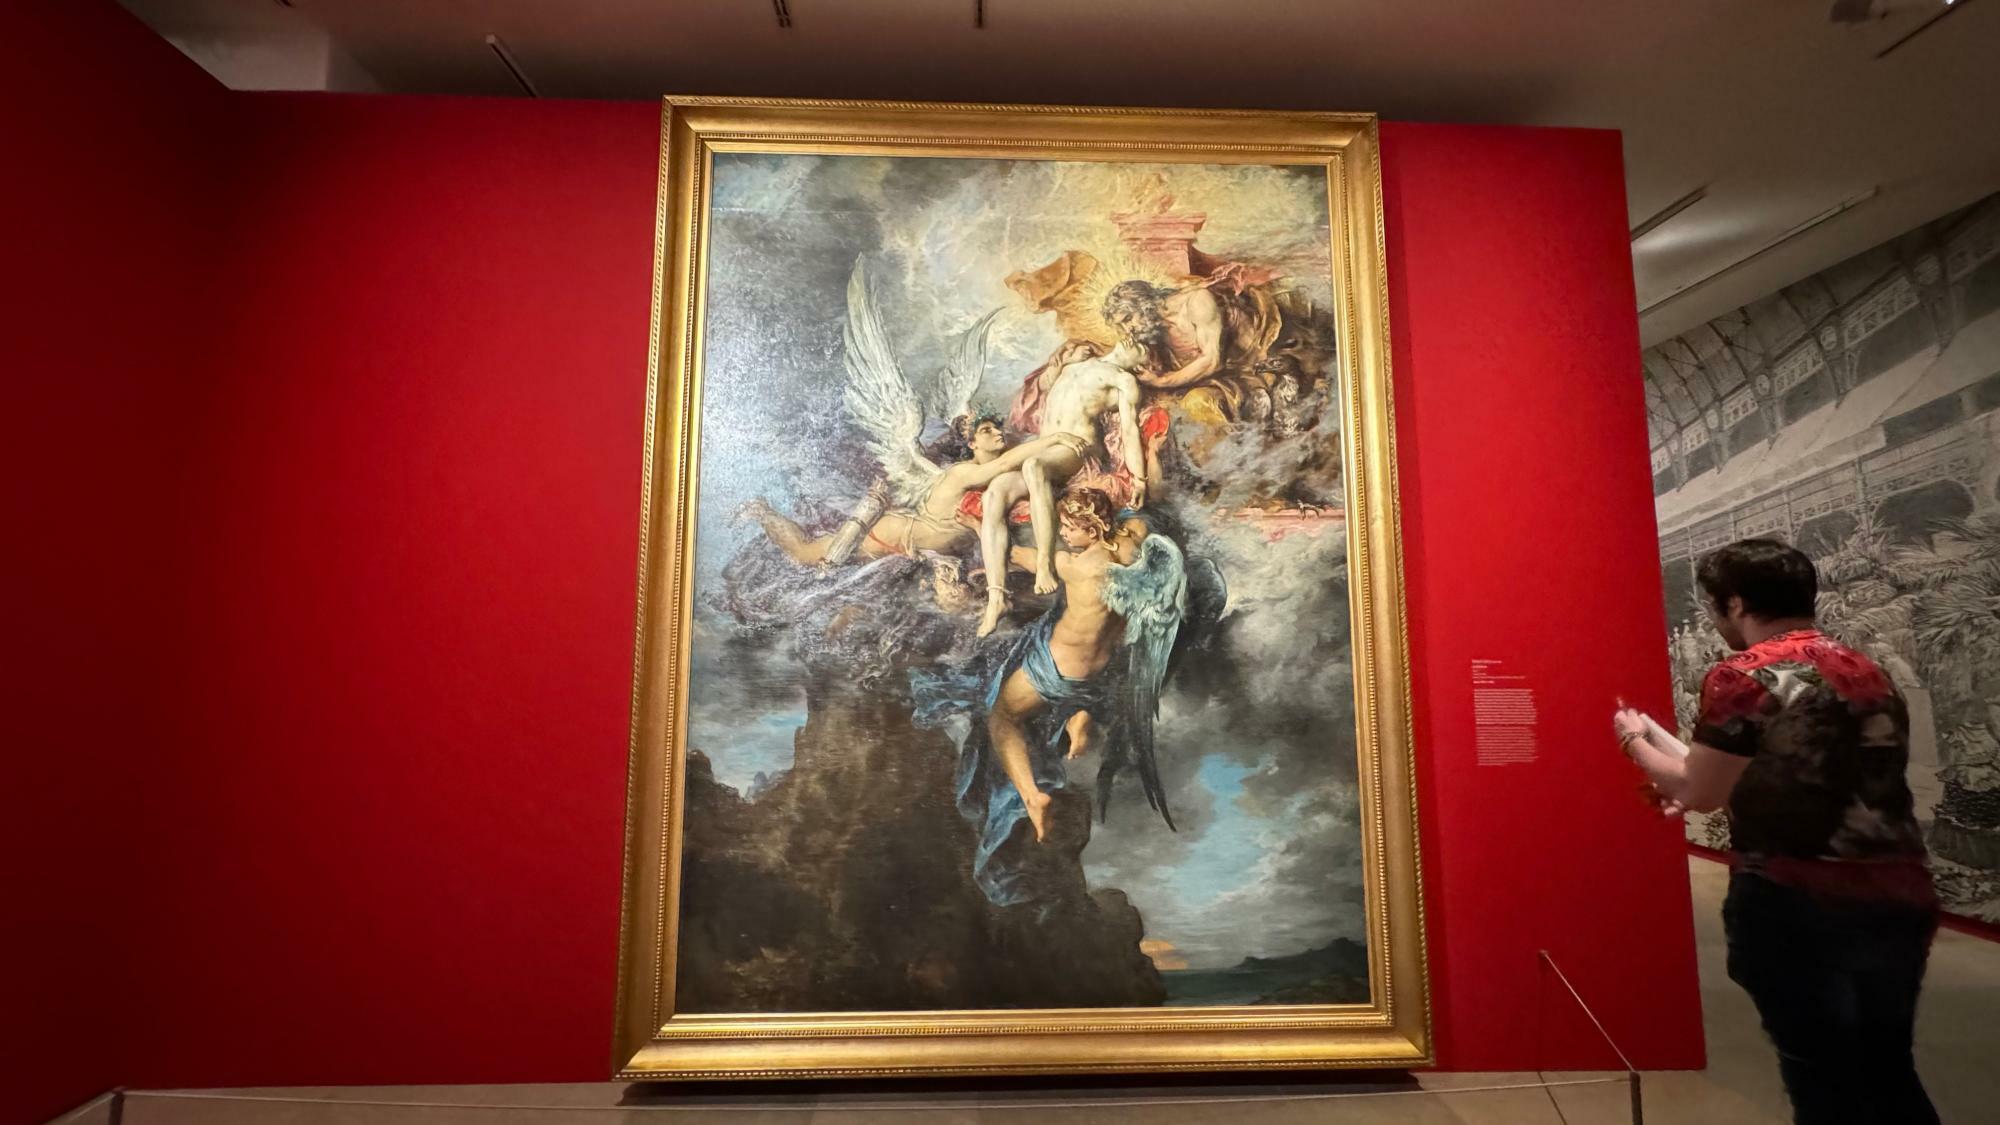 アンリ・レヴィ「サルぺドン」。1874年サロン出品作で国家の買い上げになった作品の一つ。ギリシャ神話の英雄が主題になっているが、普仏戦争で祖国のために戦死した若者たちへのオマージュを思わせる